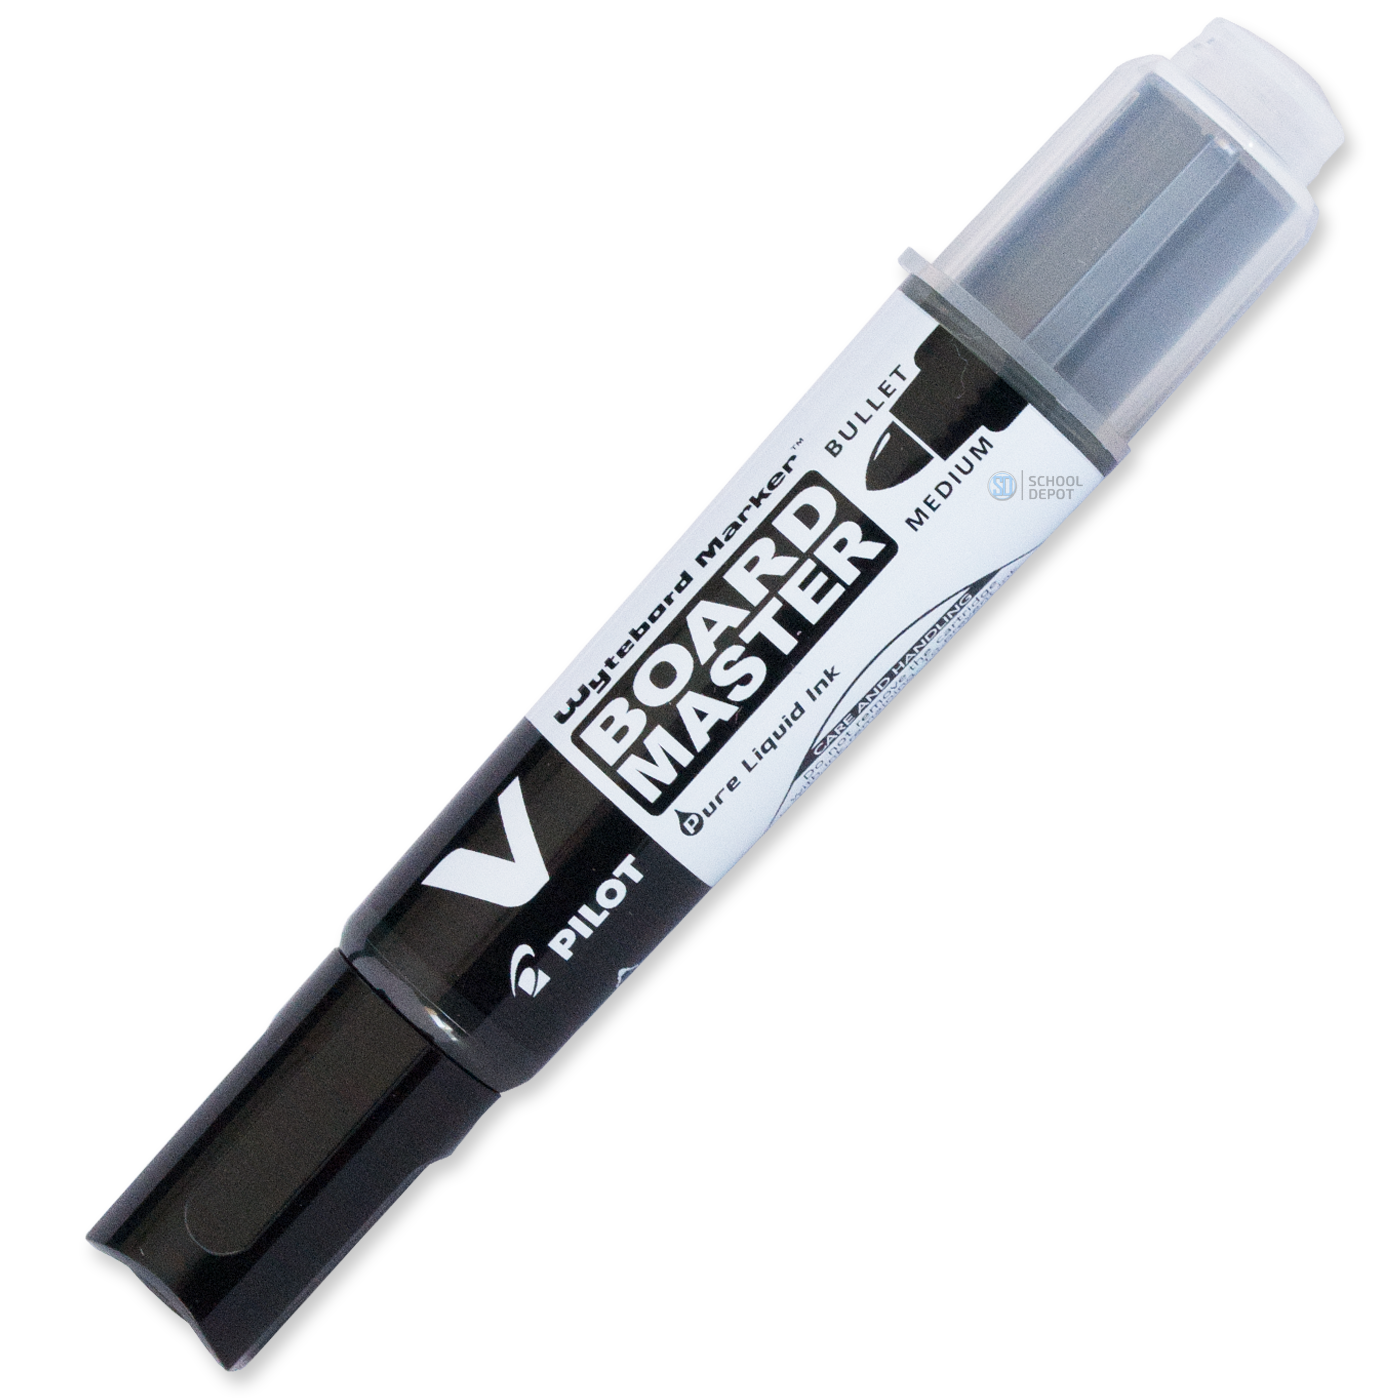 Pilot Whiteboard Marker Refillable V Board Bullet Tip Black